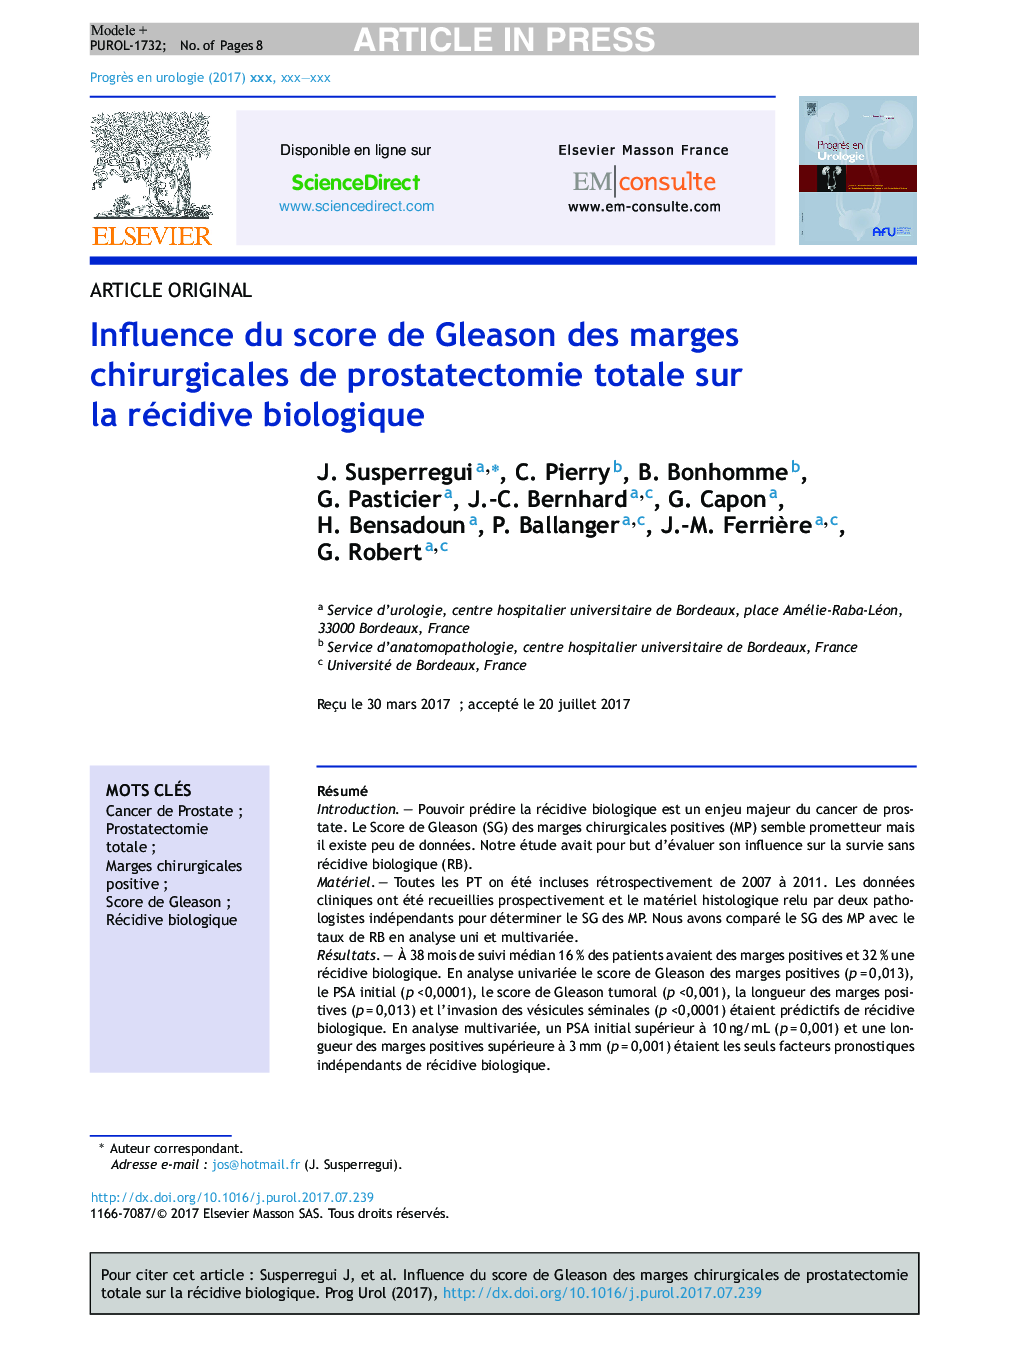 Influence du score de Gleason des marges chirurgicales de prostatectomie totale sur la récidive biologique